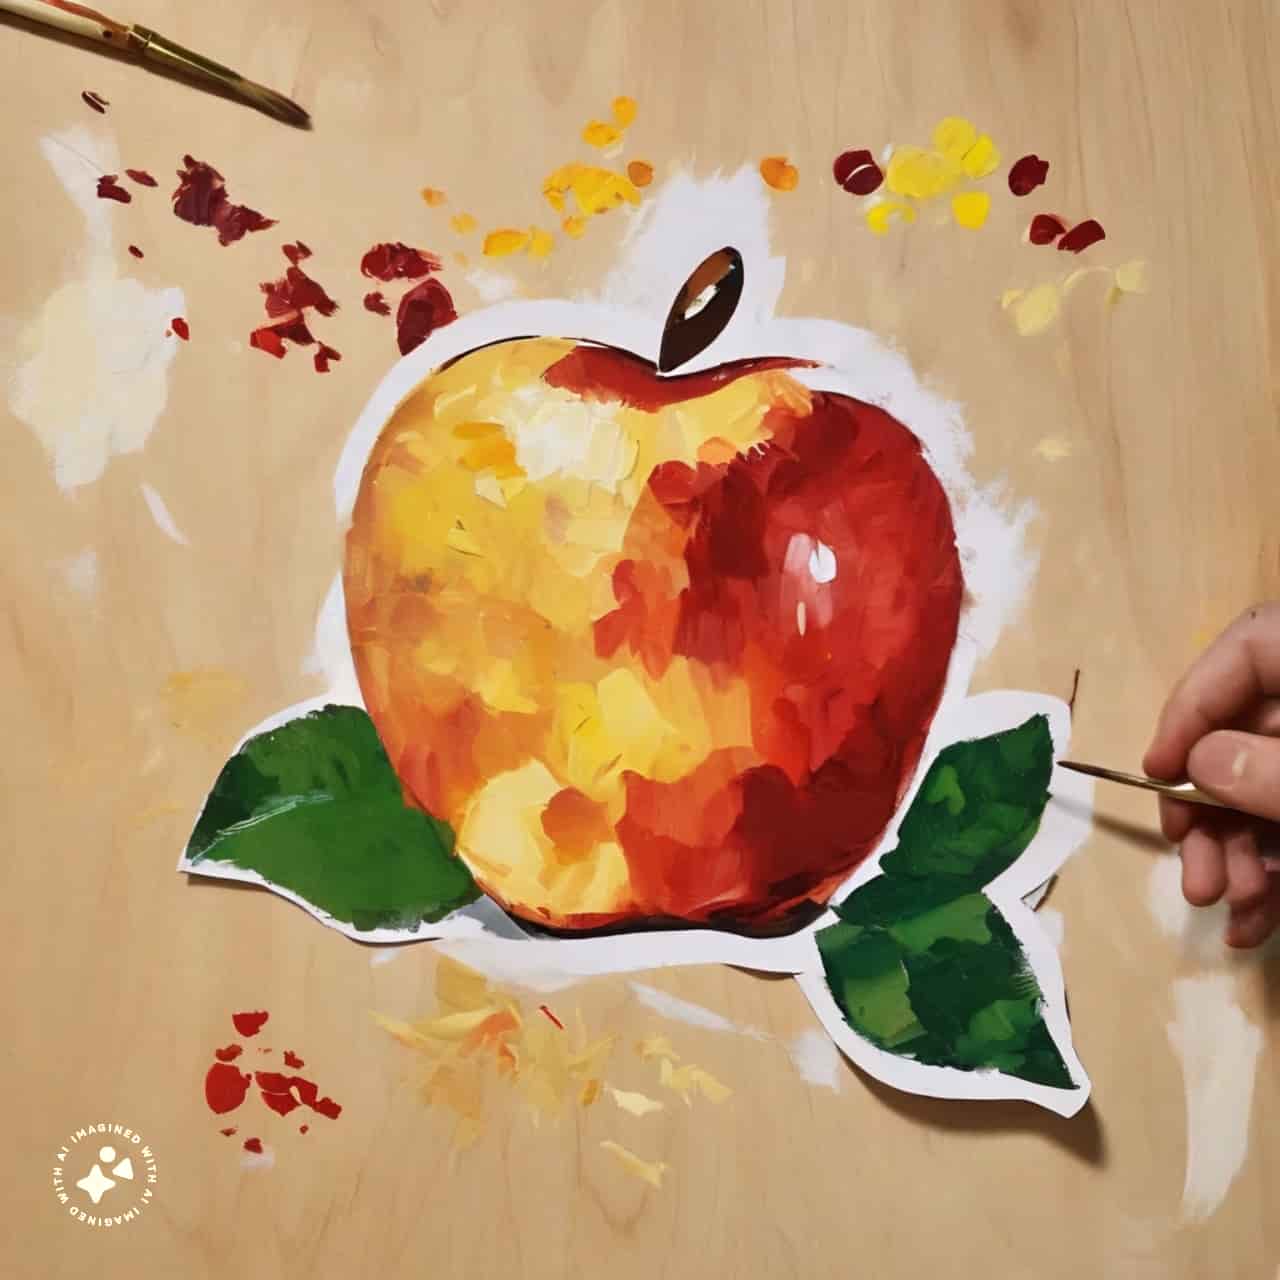 نقاشی ساده سیب برای شب یلدا (6)